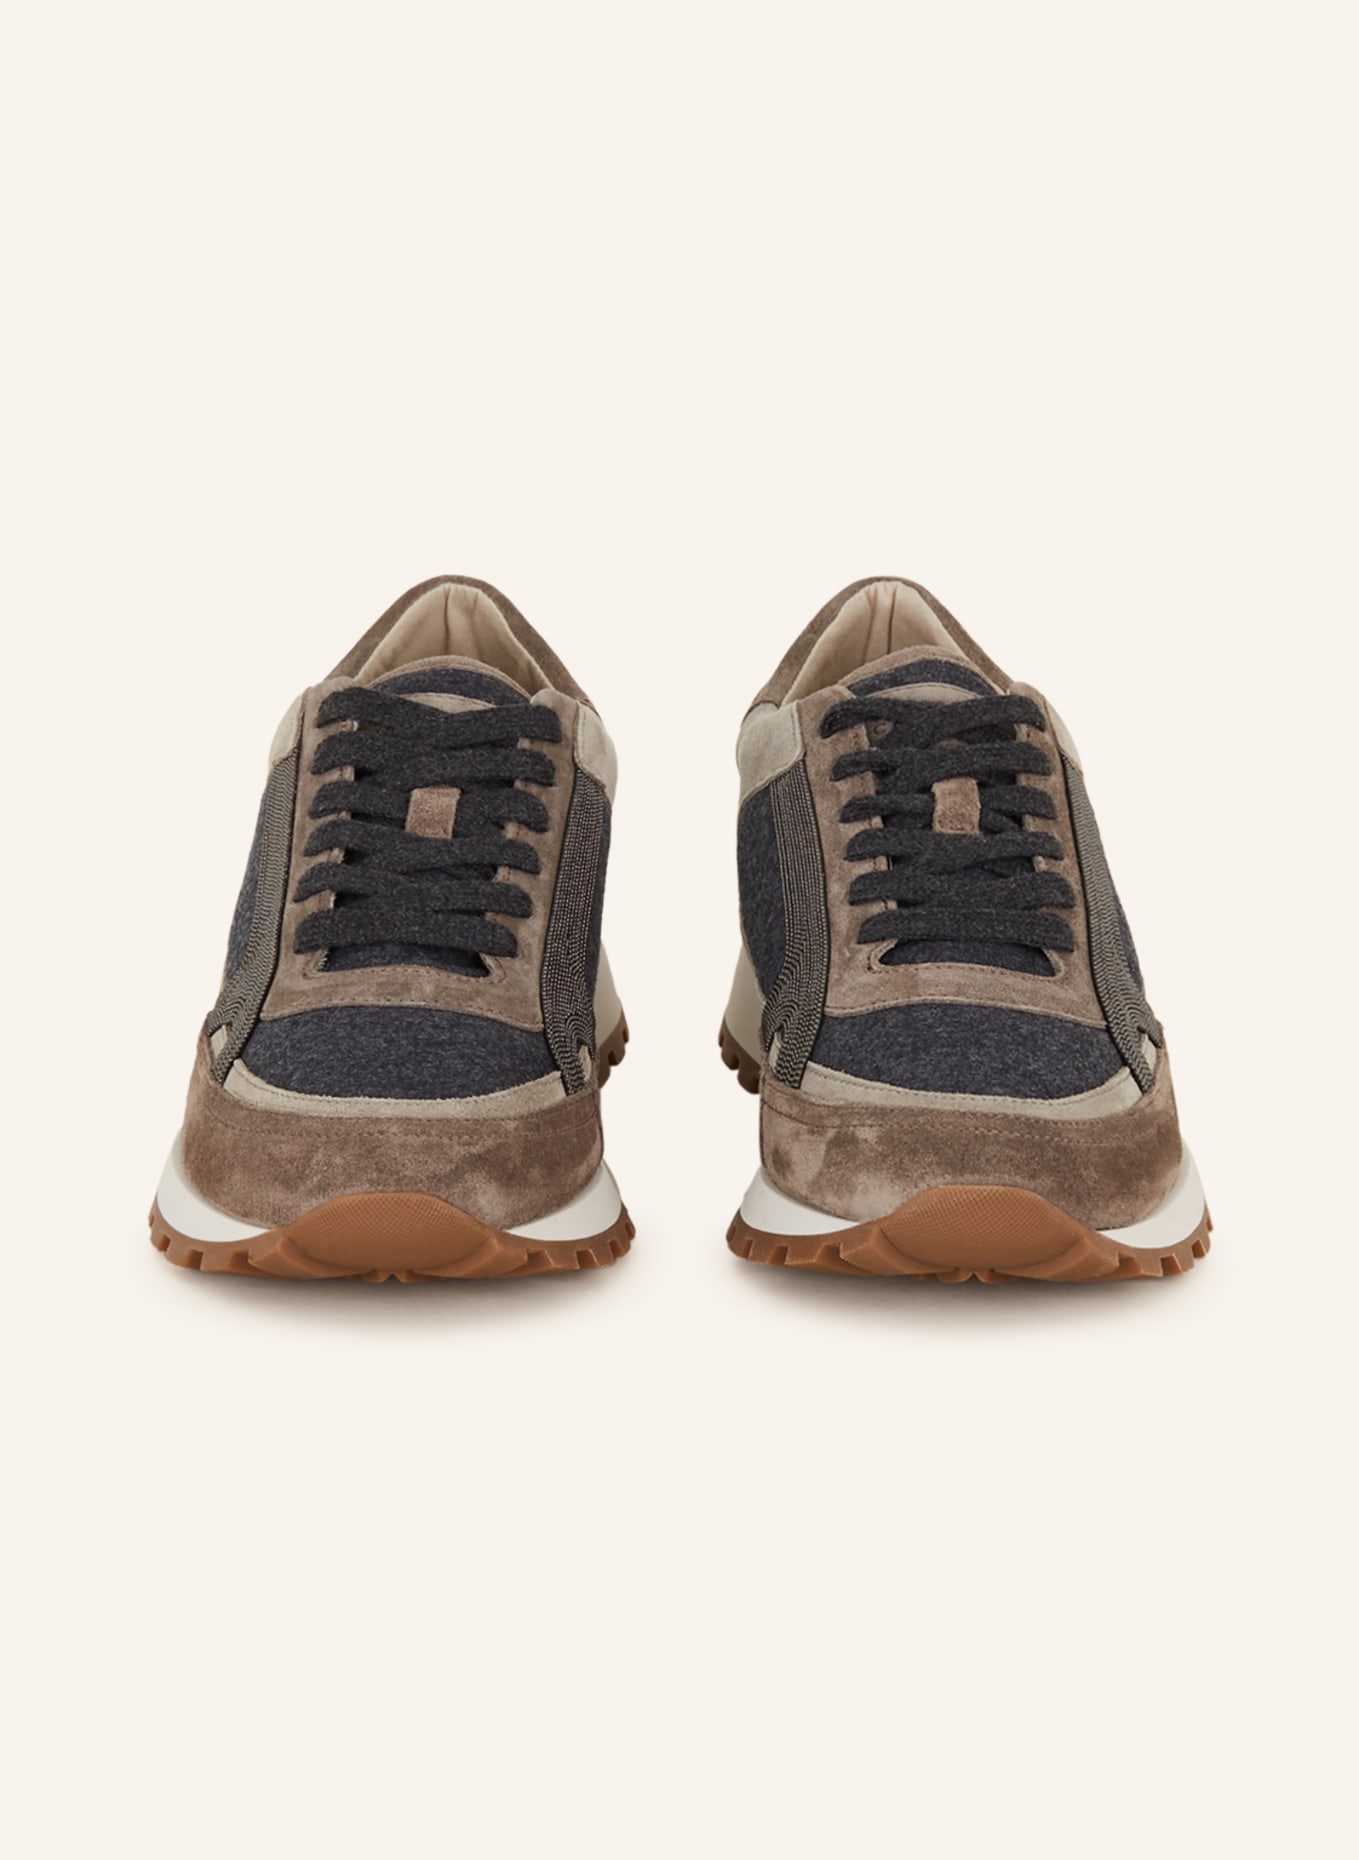 BRUNELLO CUCINELLI Sneakers, Color: DARK GRAY/ GRAY/ LIGHT GRAY (Image 3)